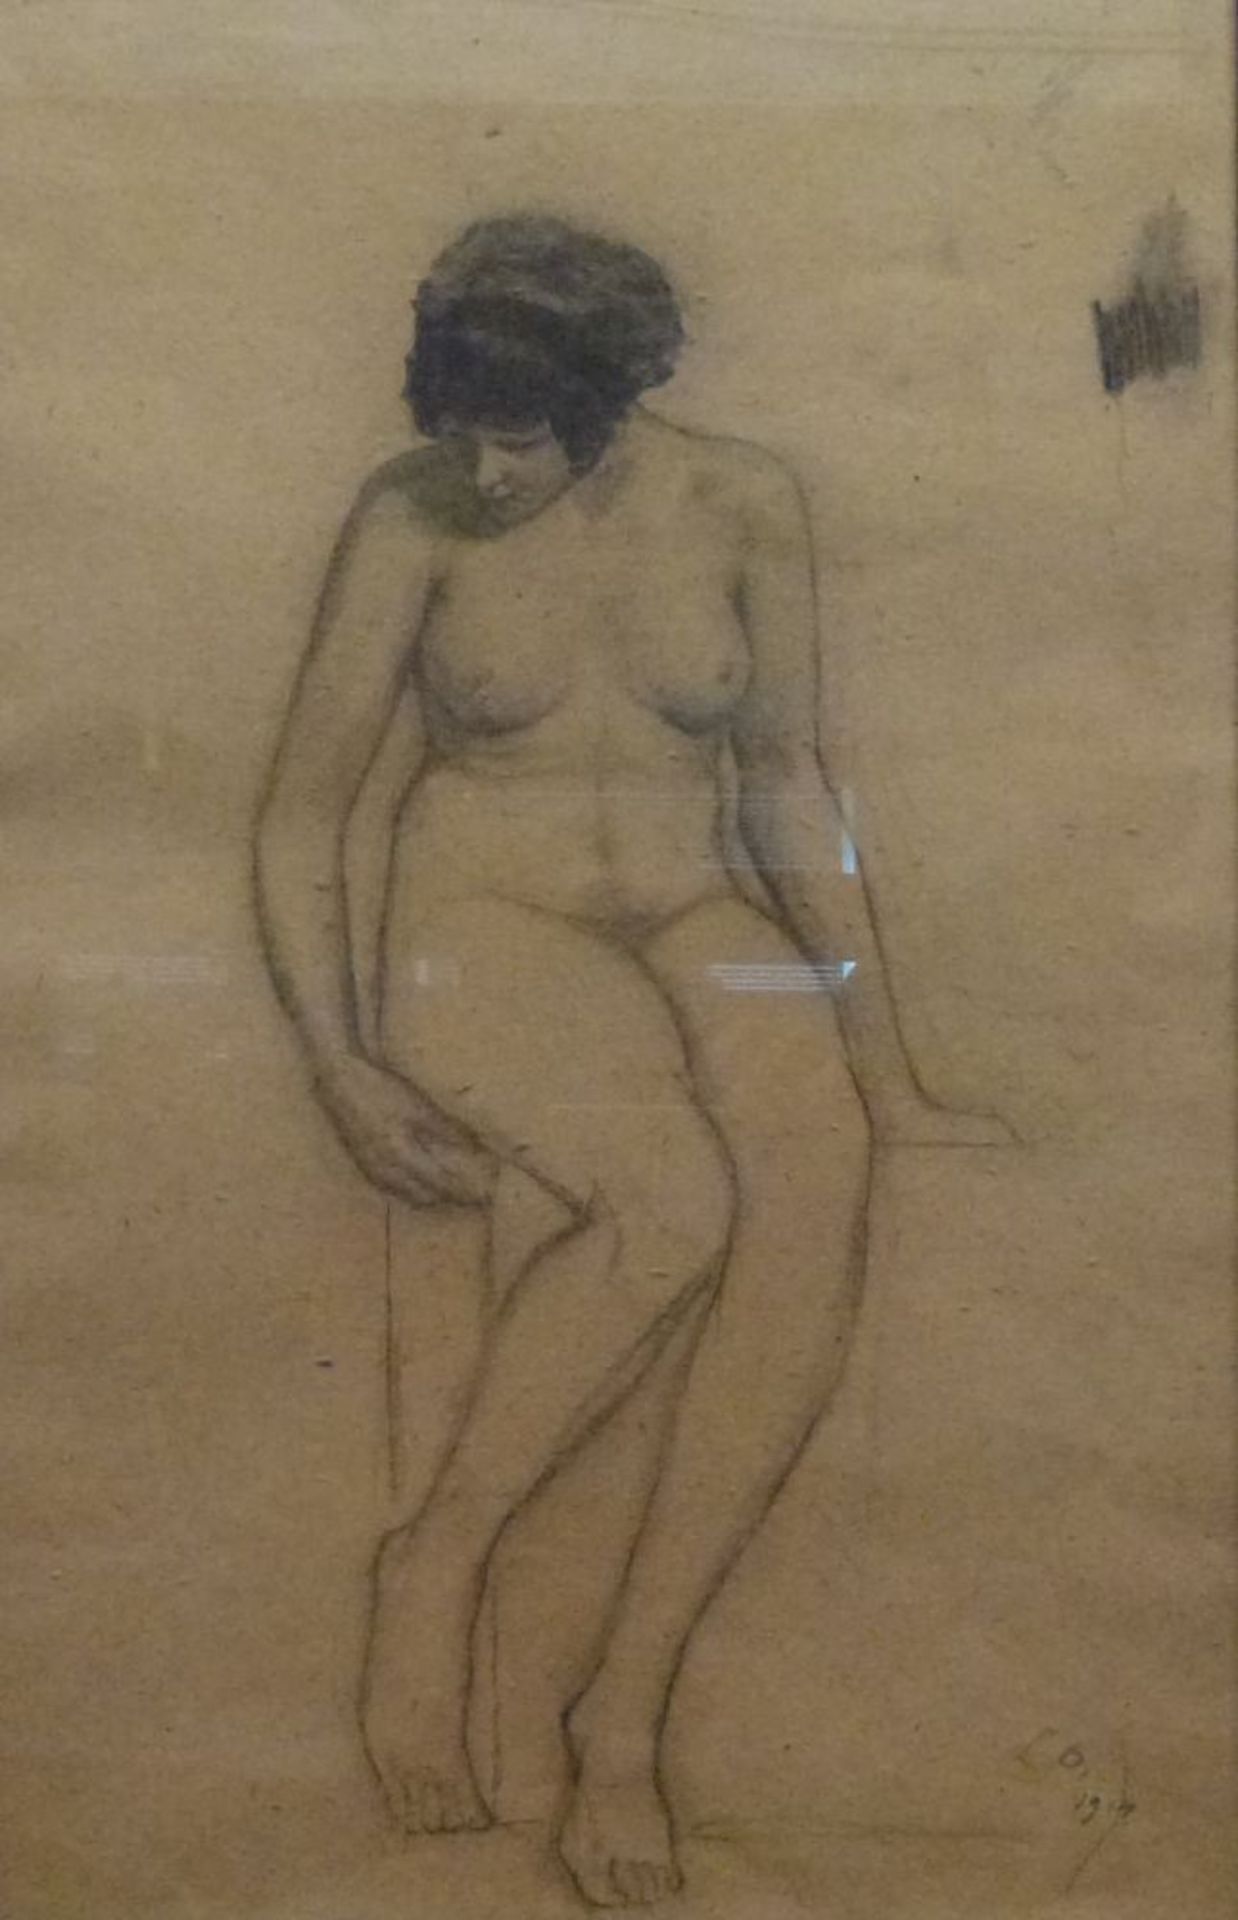 AktstudieBleistiftzeichnung, monogr. LG. 1914, auf Bord sitzende junge Frau, R., 47x30 cm